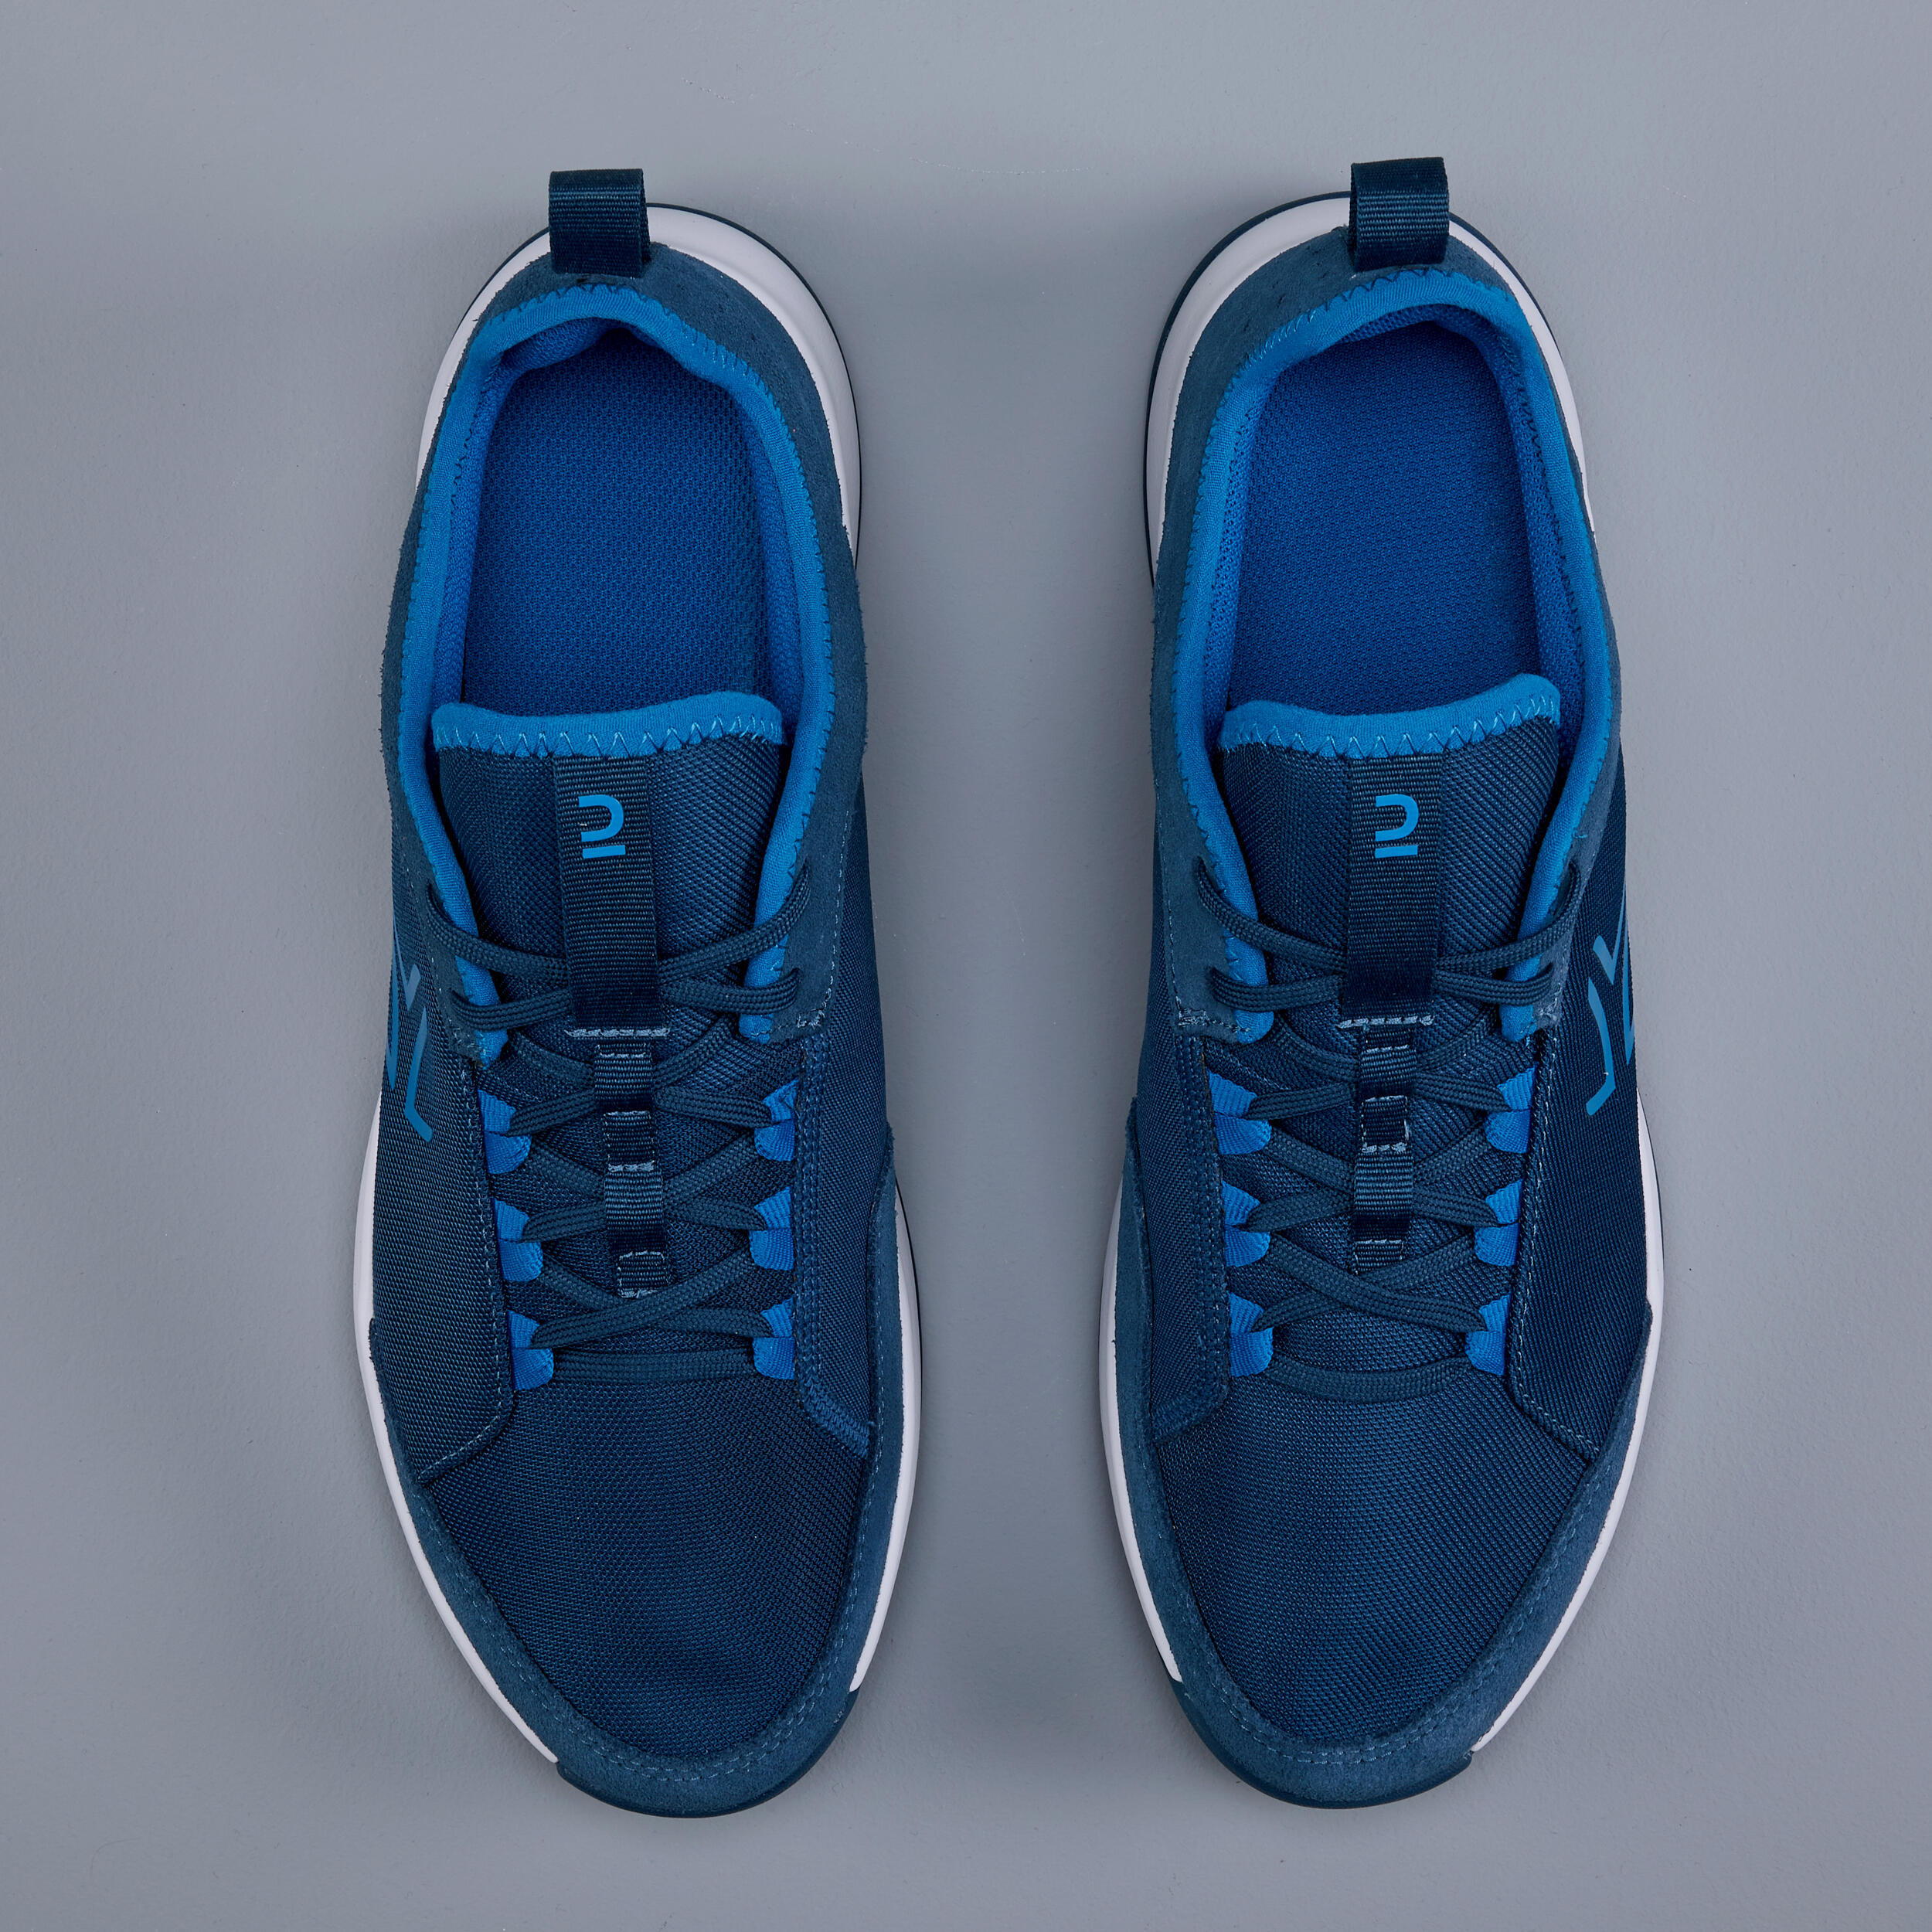 Men's Multi-Court Tennis Shoes TS130 - Blue 7/7